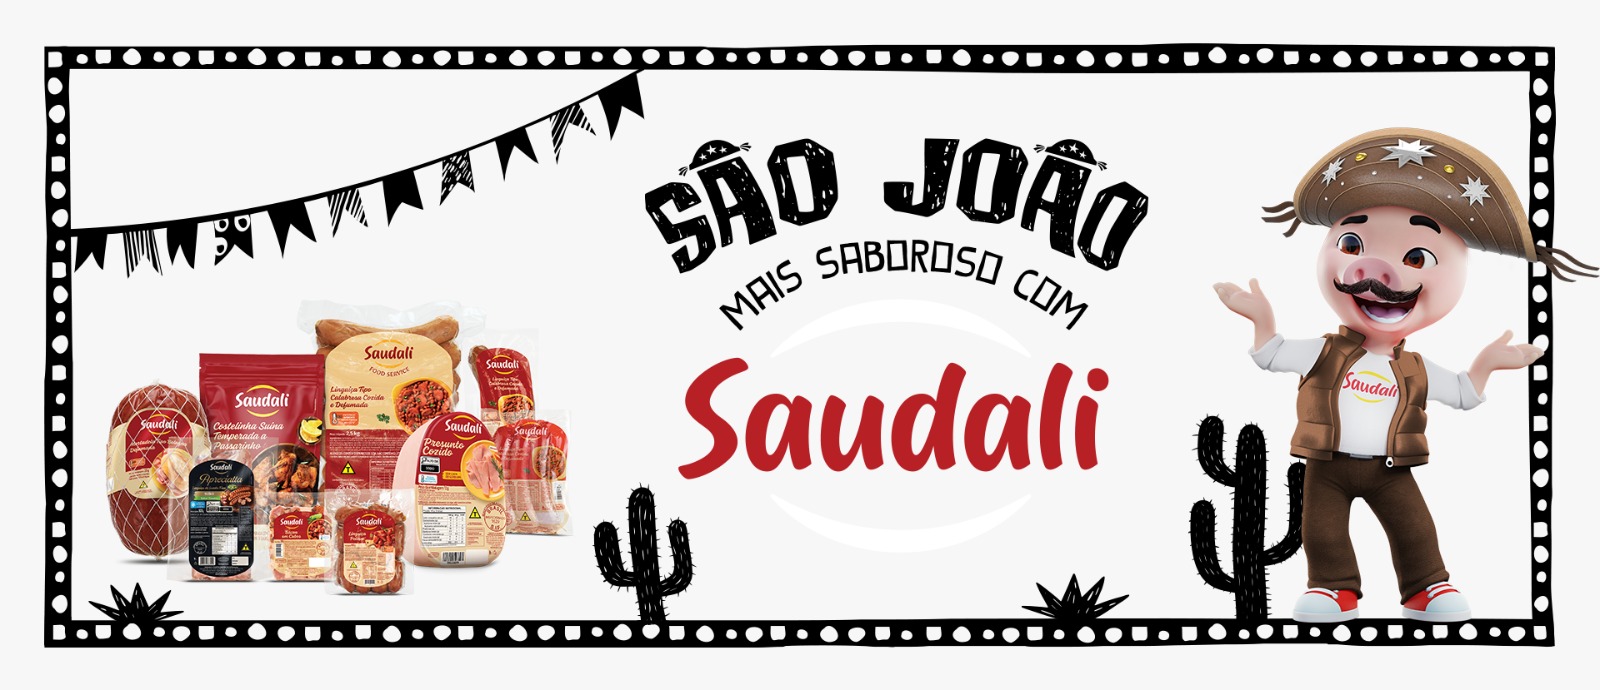  Campanha ‘São João mais saboroso com Saudali’ reforça produtos especiais para gastronomia típica